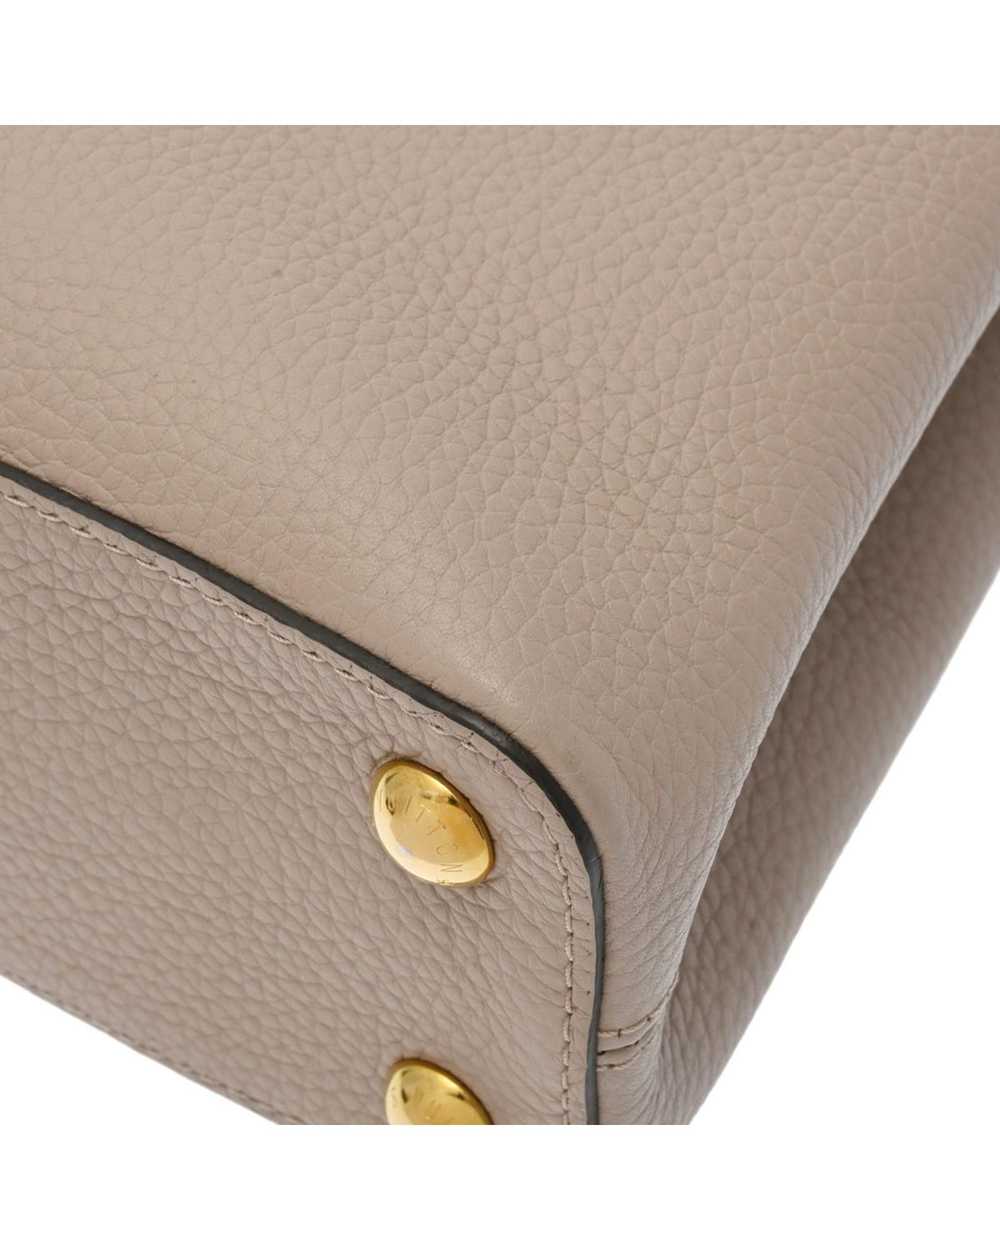 Louis Vuitton Sophisticated Leather Flap Handbag - image 7